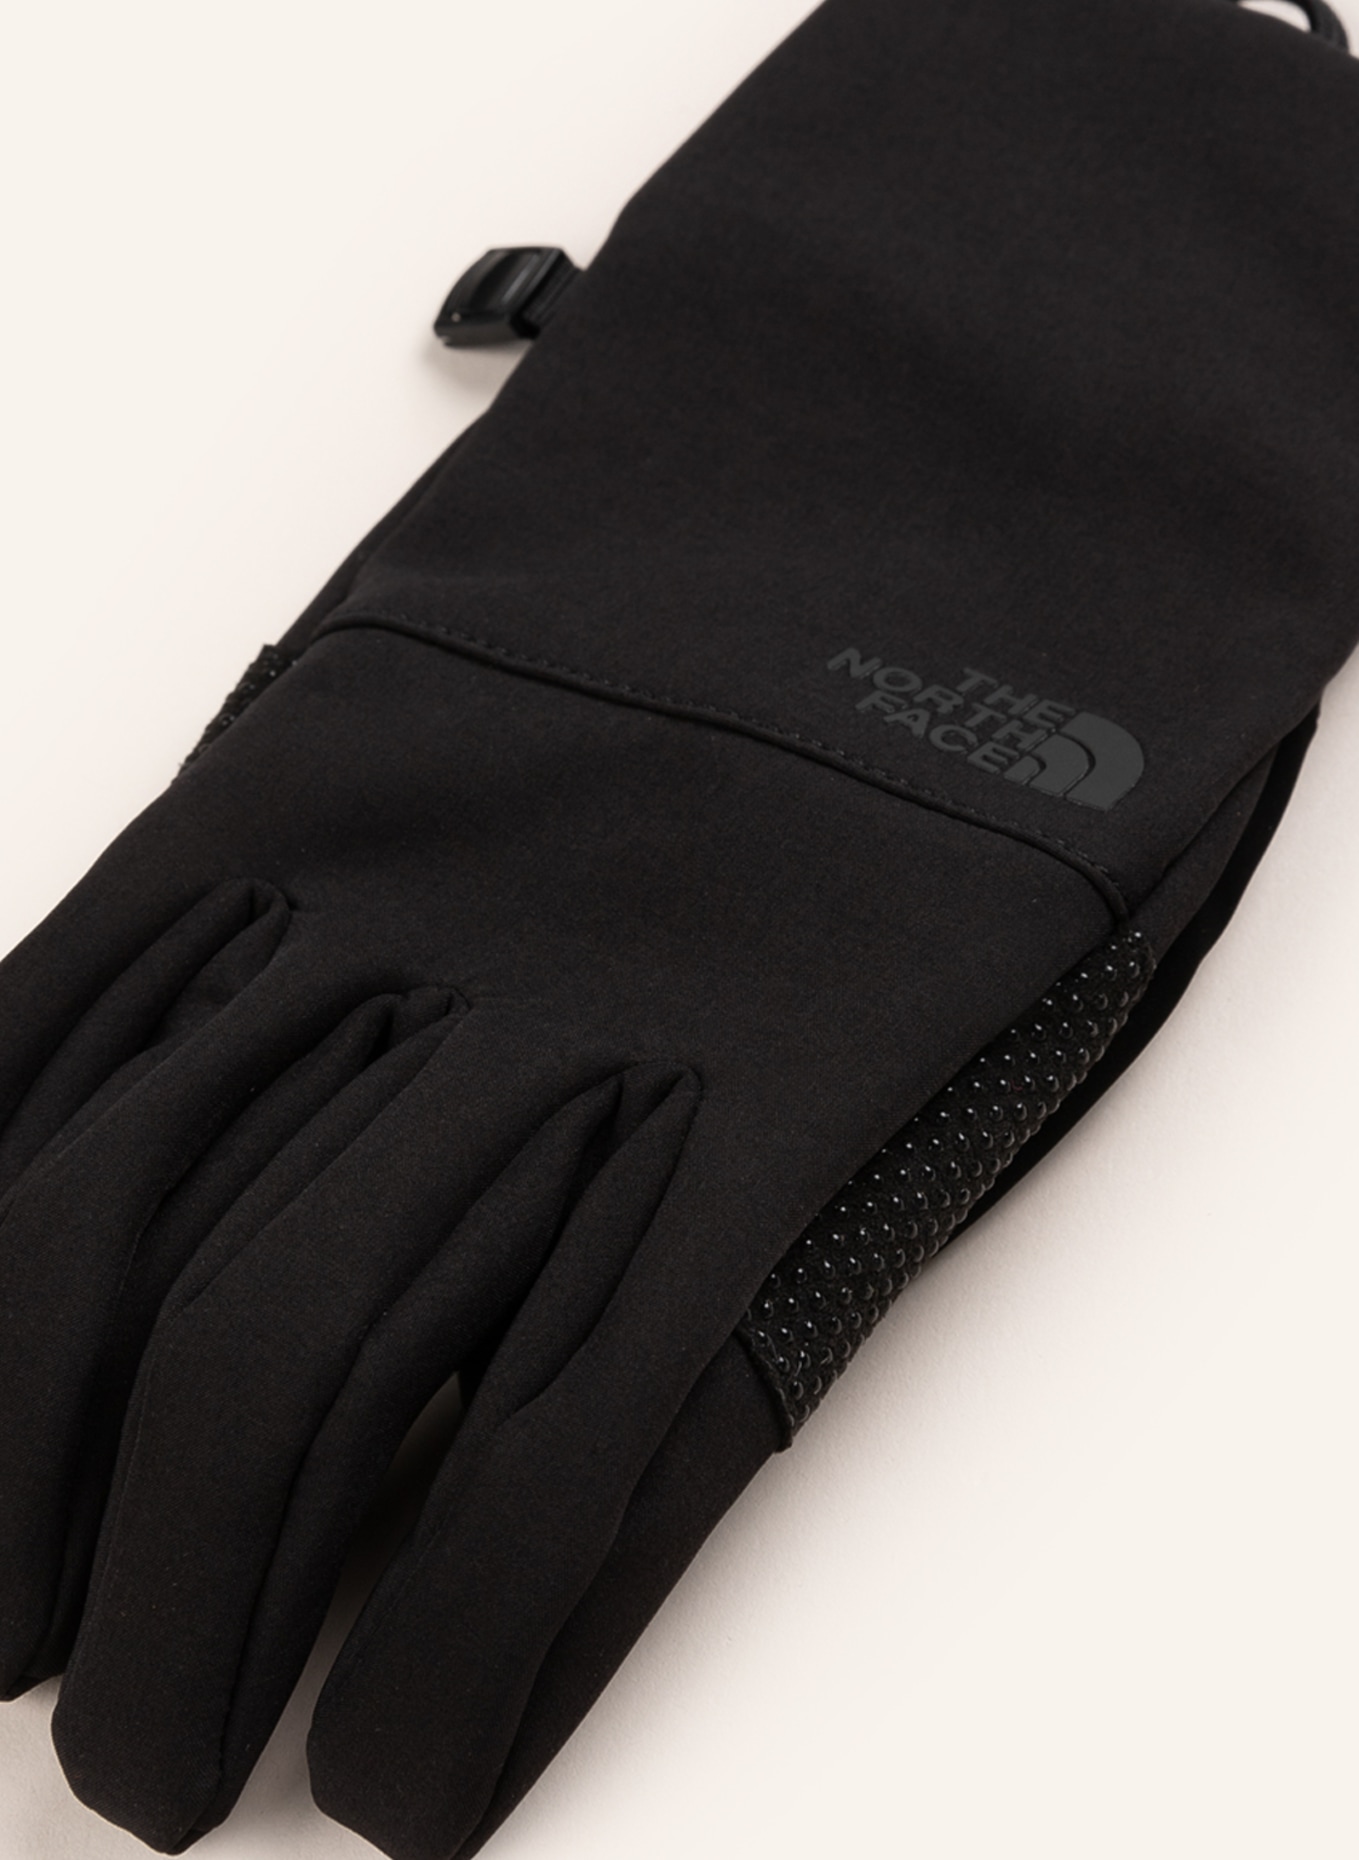 THE NORTH FACE Multisport-Handschuhe APEX ETIP mit Touchscreen-Funktion in  schwarz